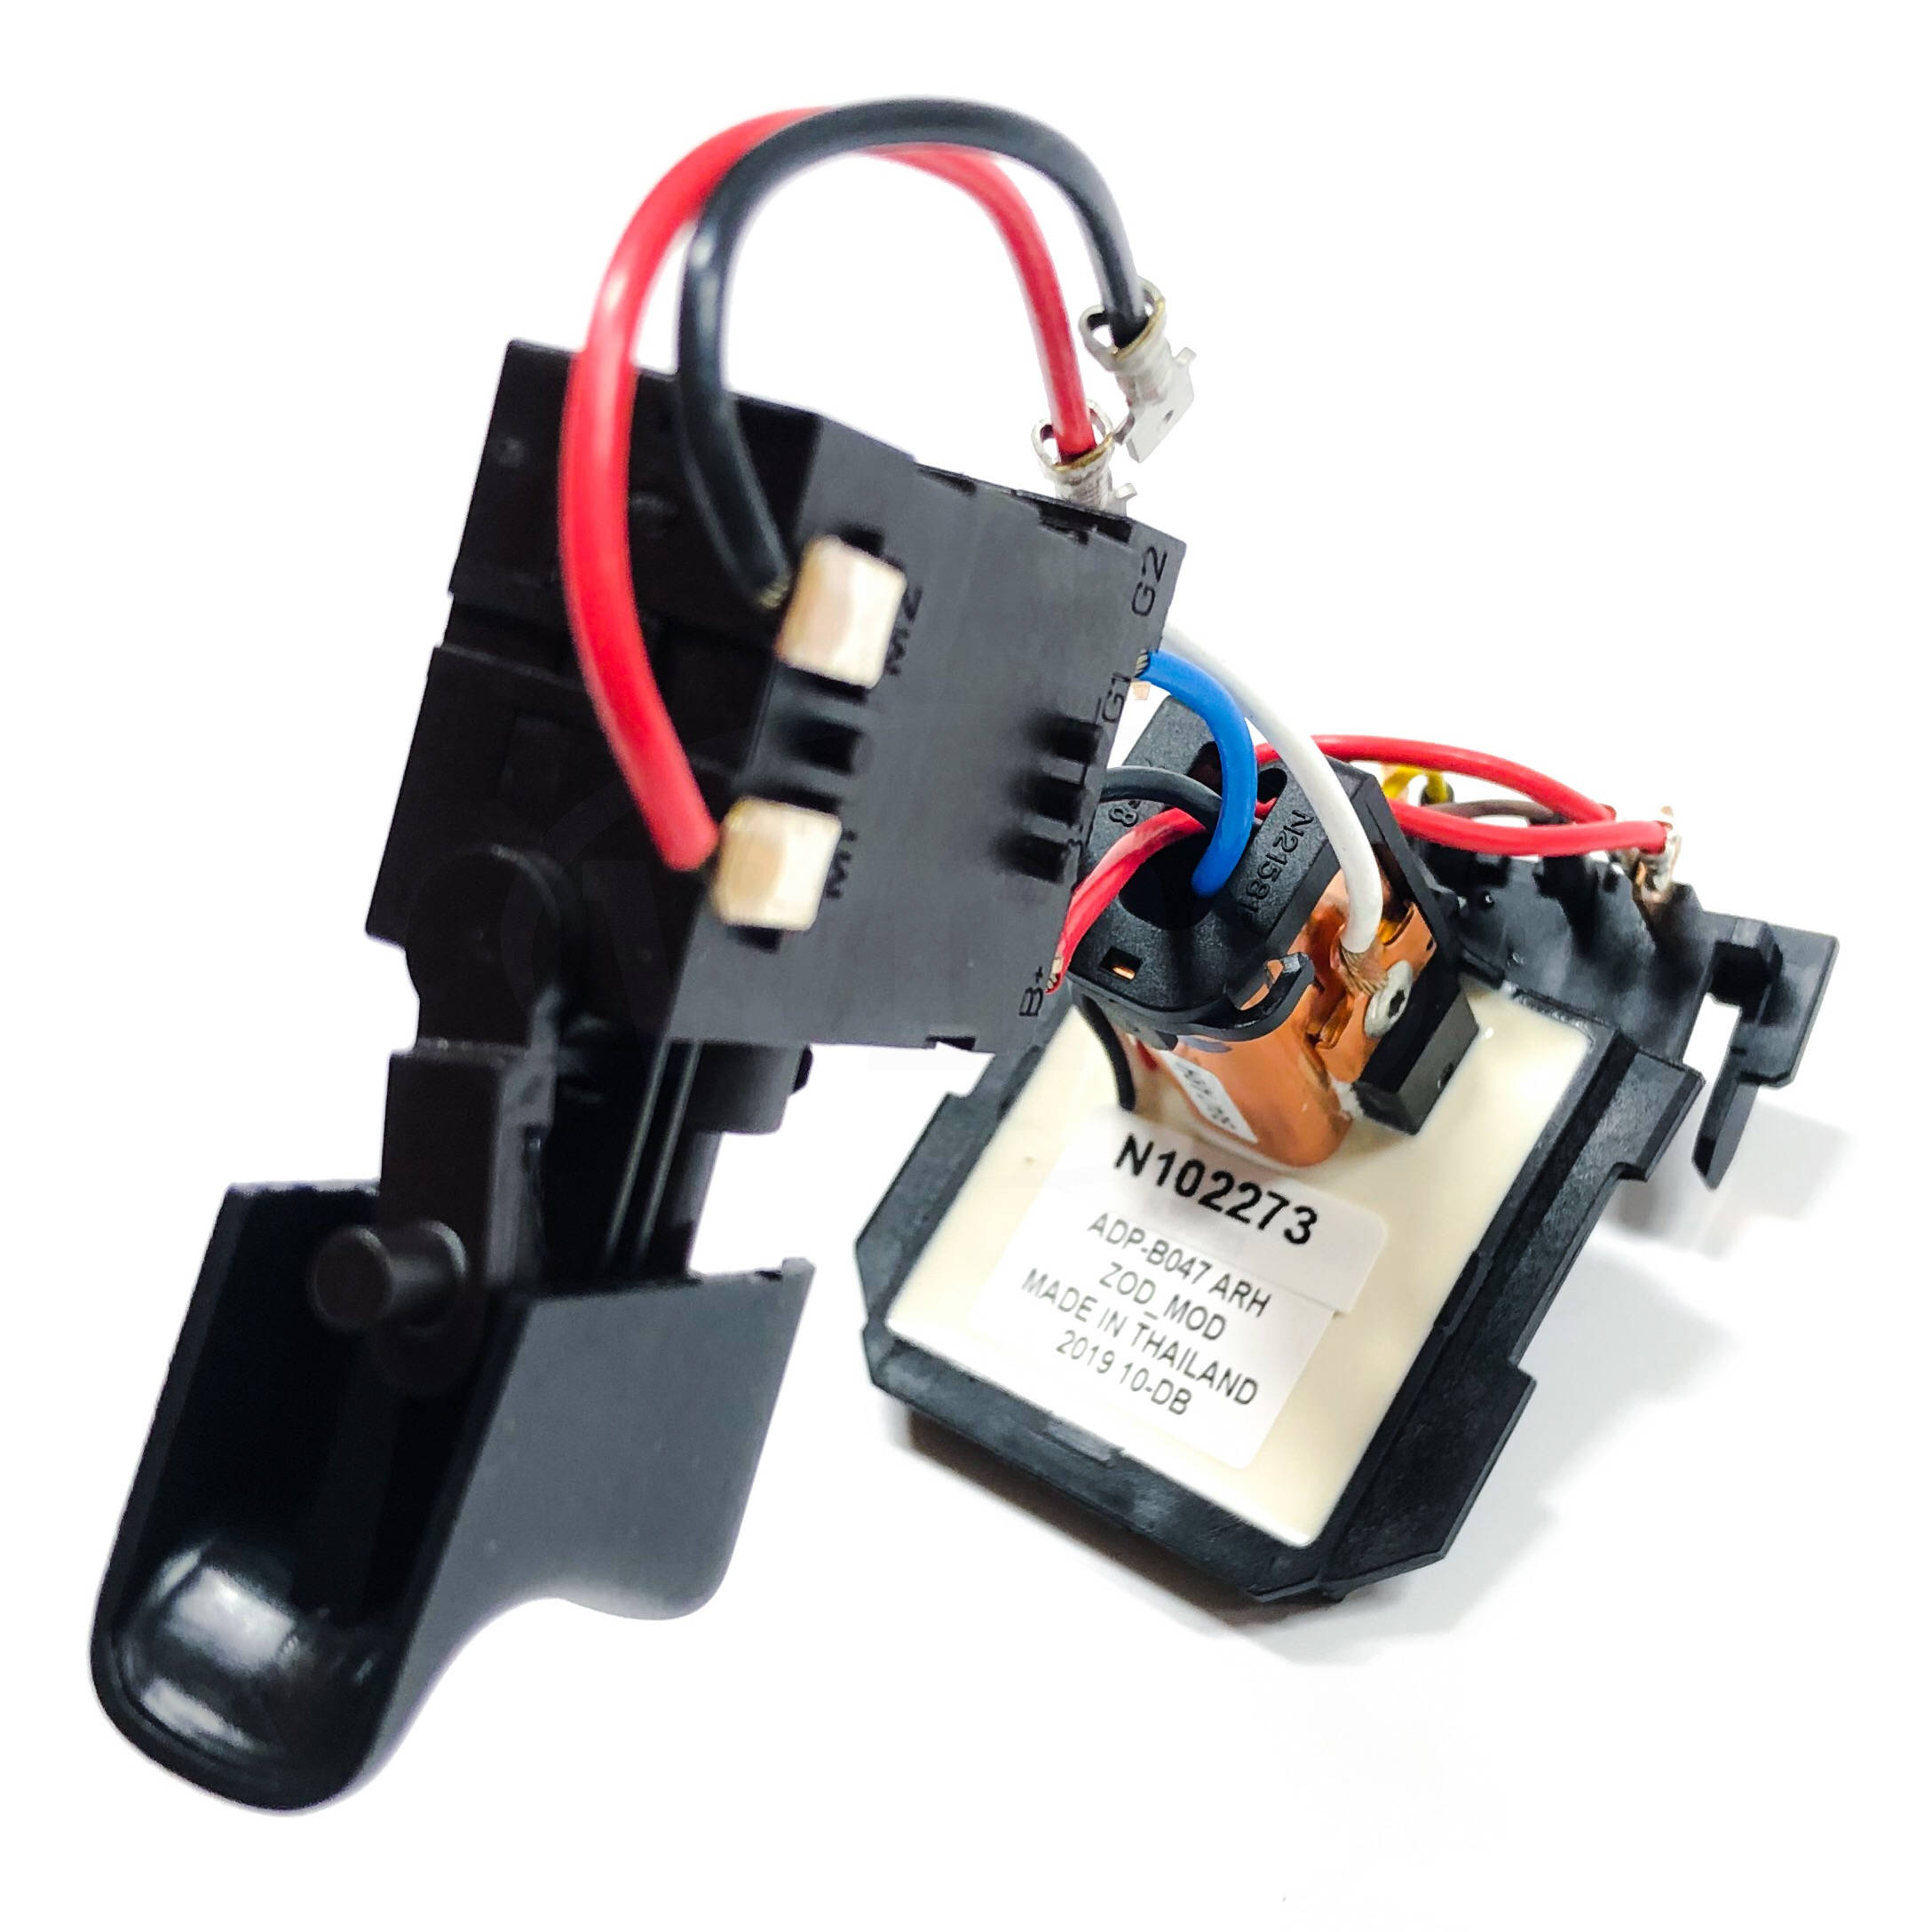 N102272 DeWALT SA Electrical Control Switch VSR